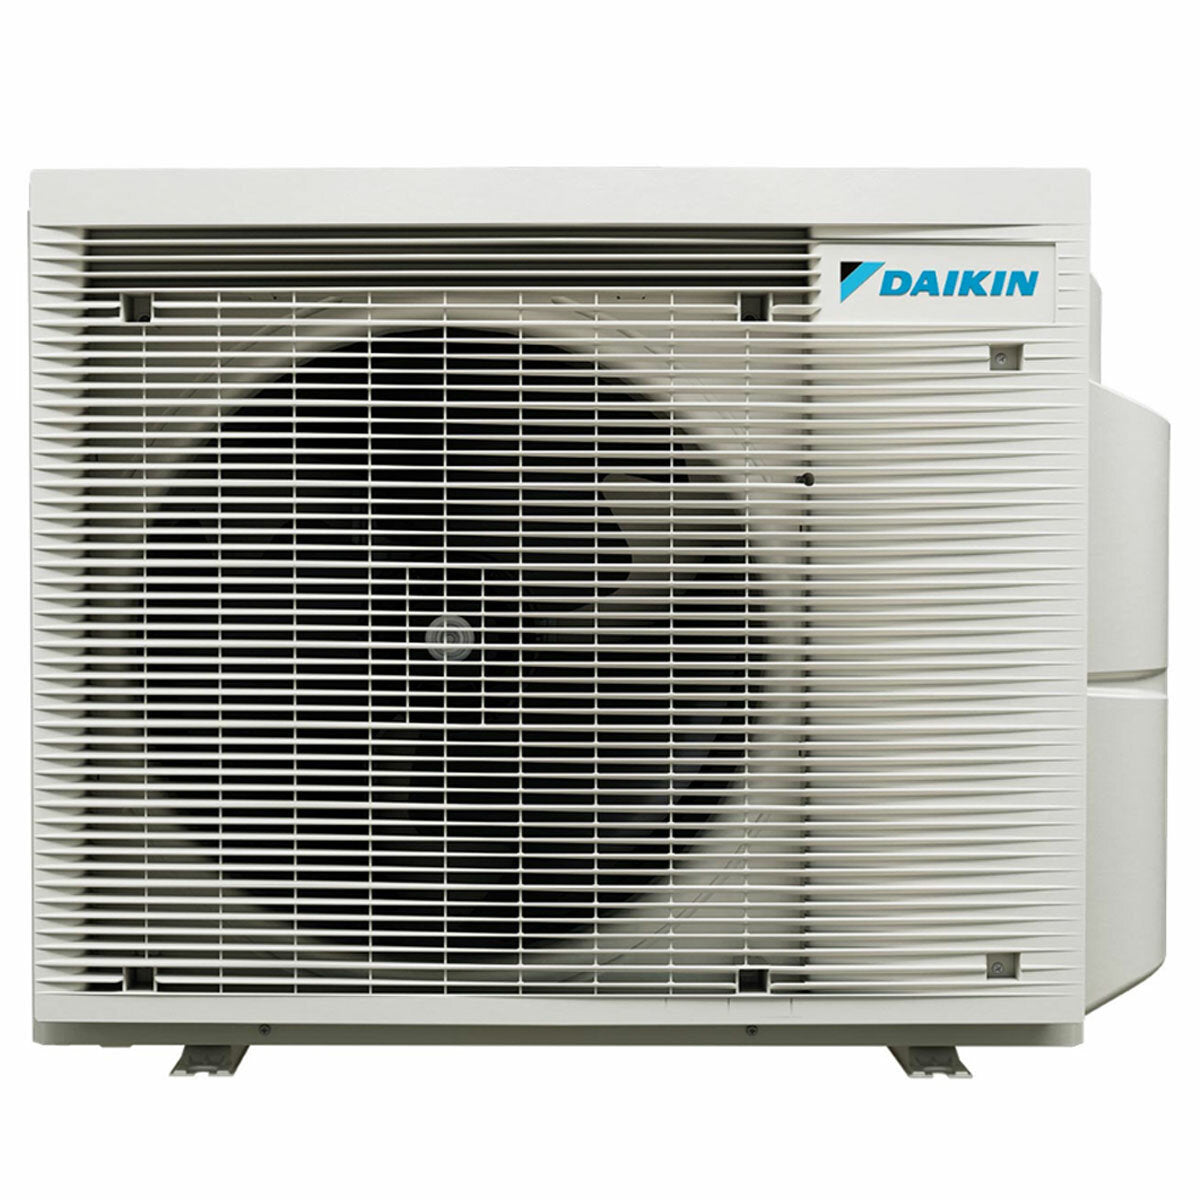 Daikin Emura air conditioner 3 split panels 7000+7000+9000+12000 BTU inverter A+ wifi outdoor unit 6.8 kW White